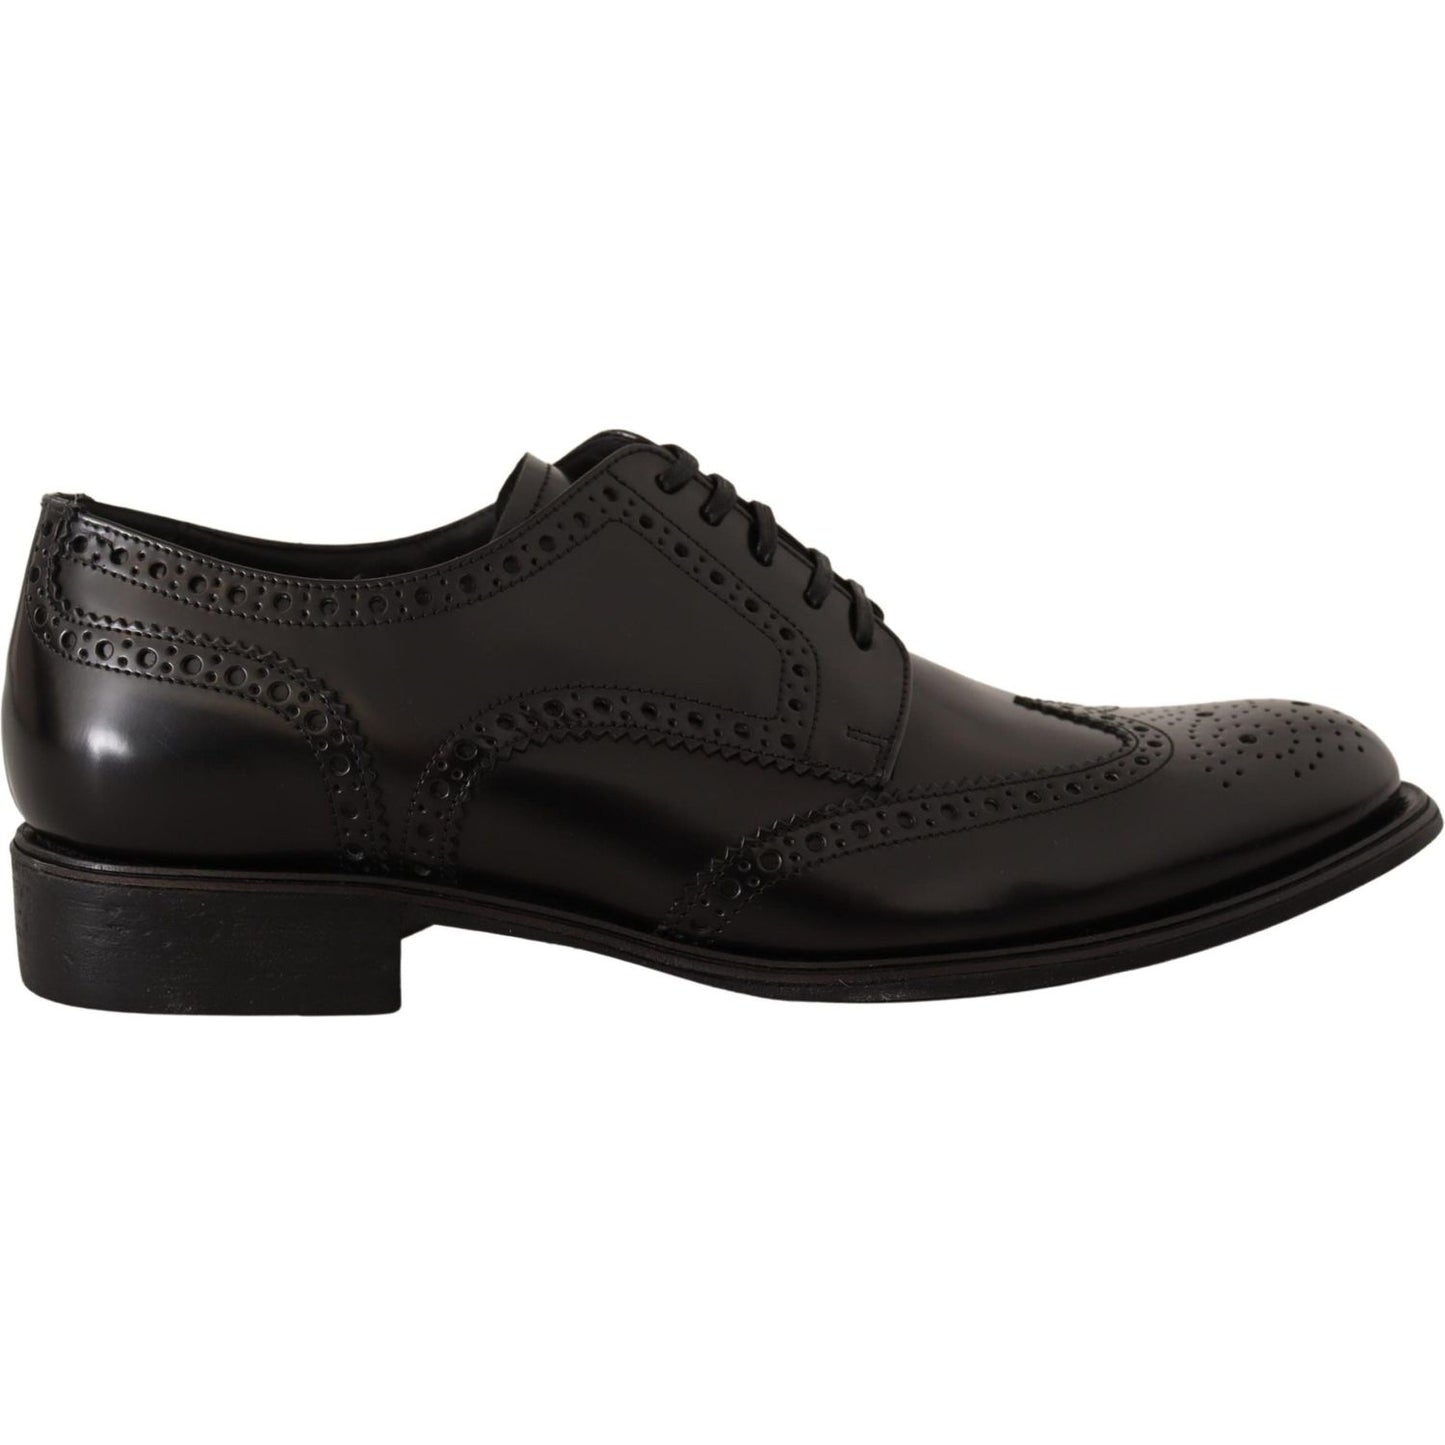 Dolce & Gabbana Elegant Wingtip Derby Oxford Shoes black-leather-oxford-wingtip-formal-shoes